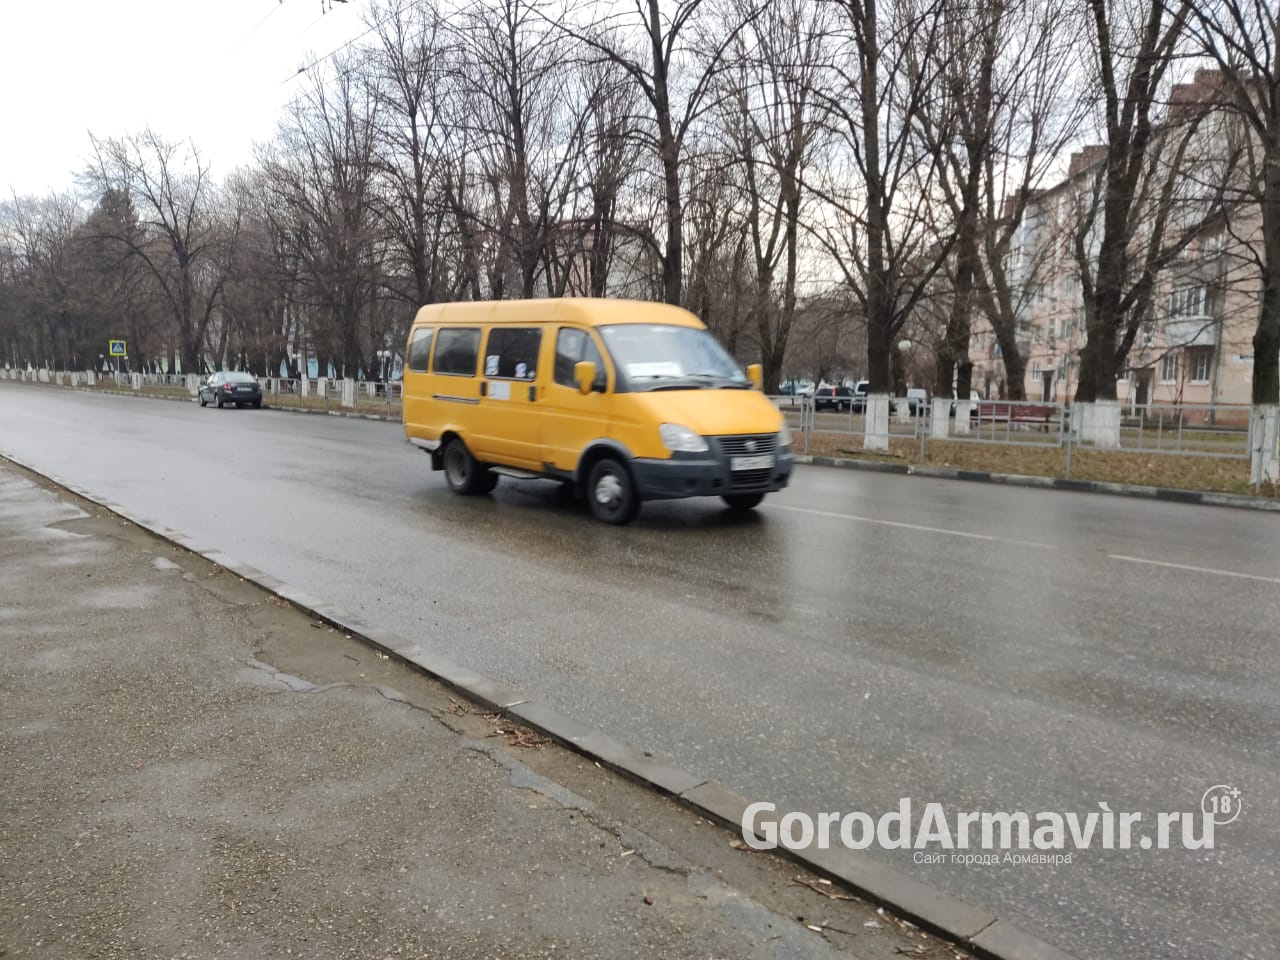 В Армавире стоимость проезда в маршрутках увеличится на 2 рубля 